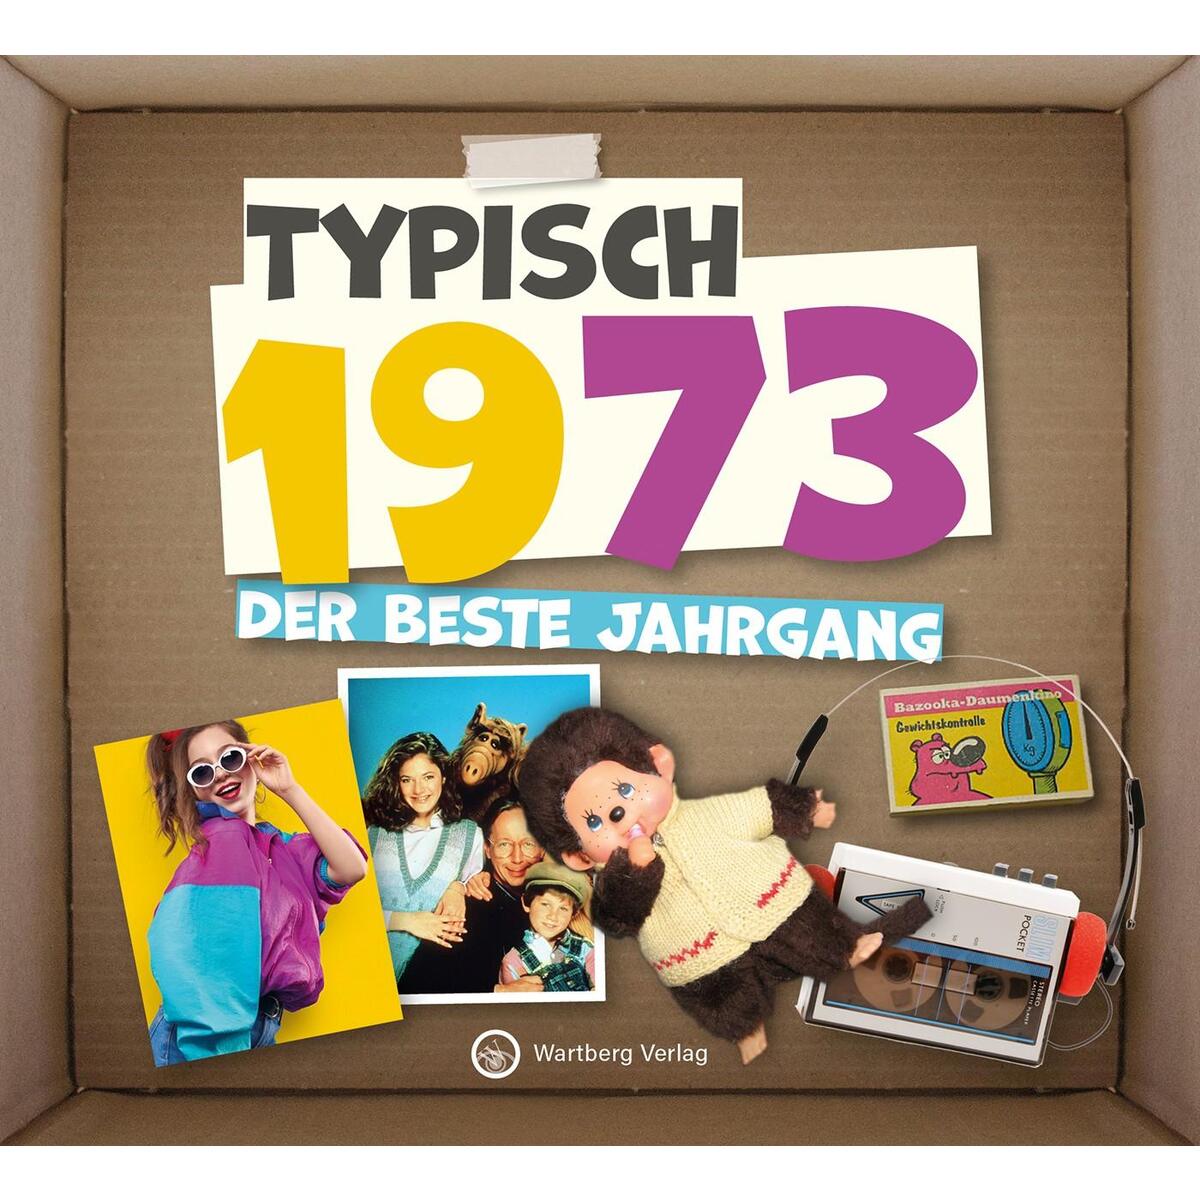 Typisch 1973 - Der beste Jahrgang von Wartberg Verlag